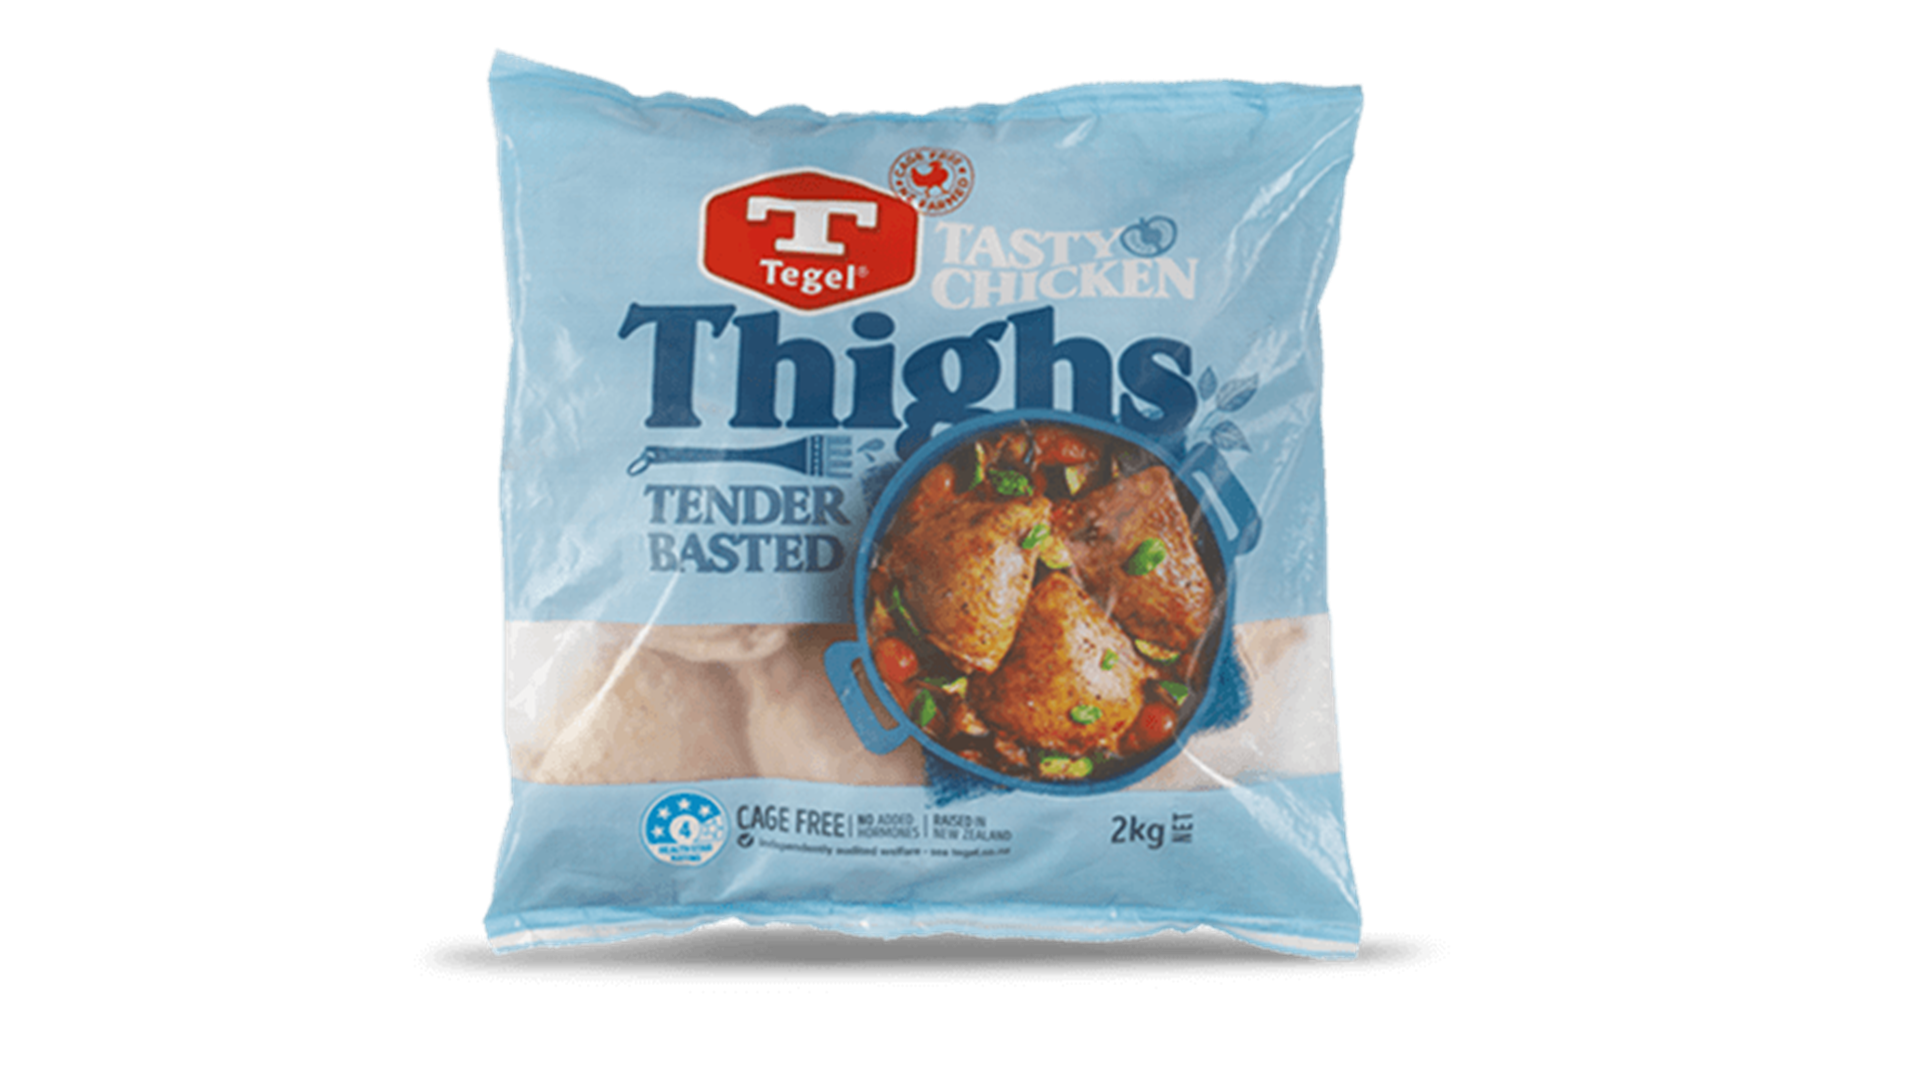 Tegel Frozen Chicken Thighs 2kg